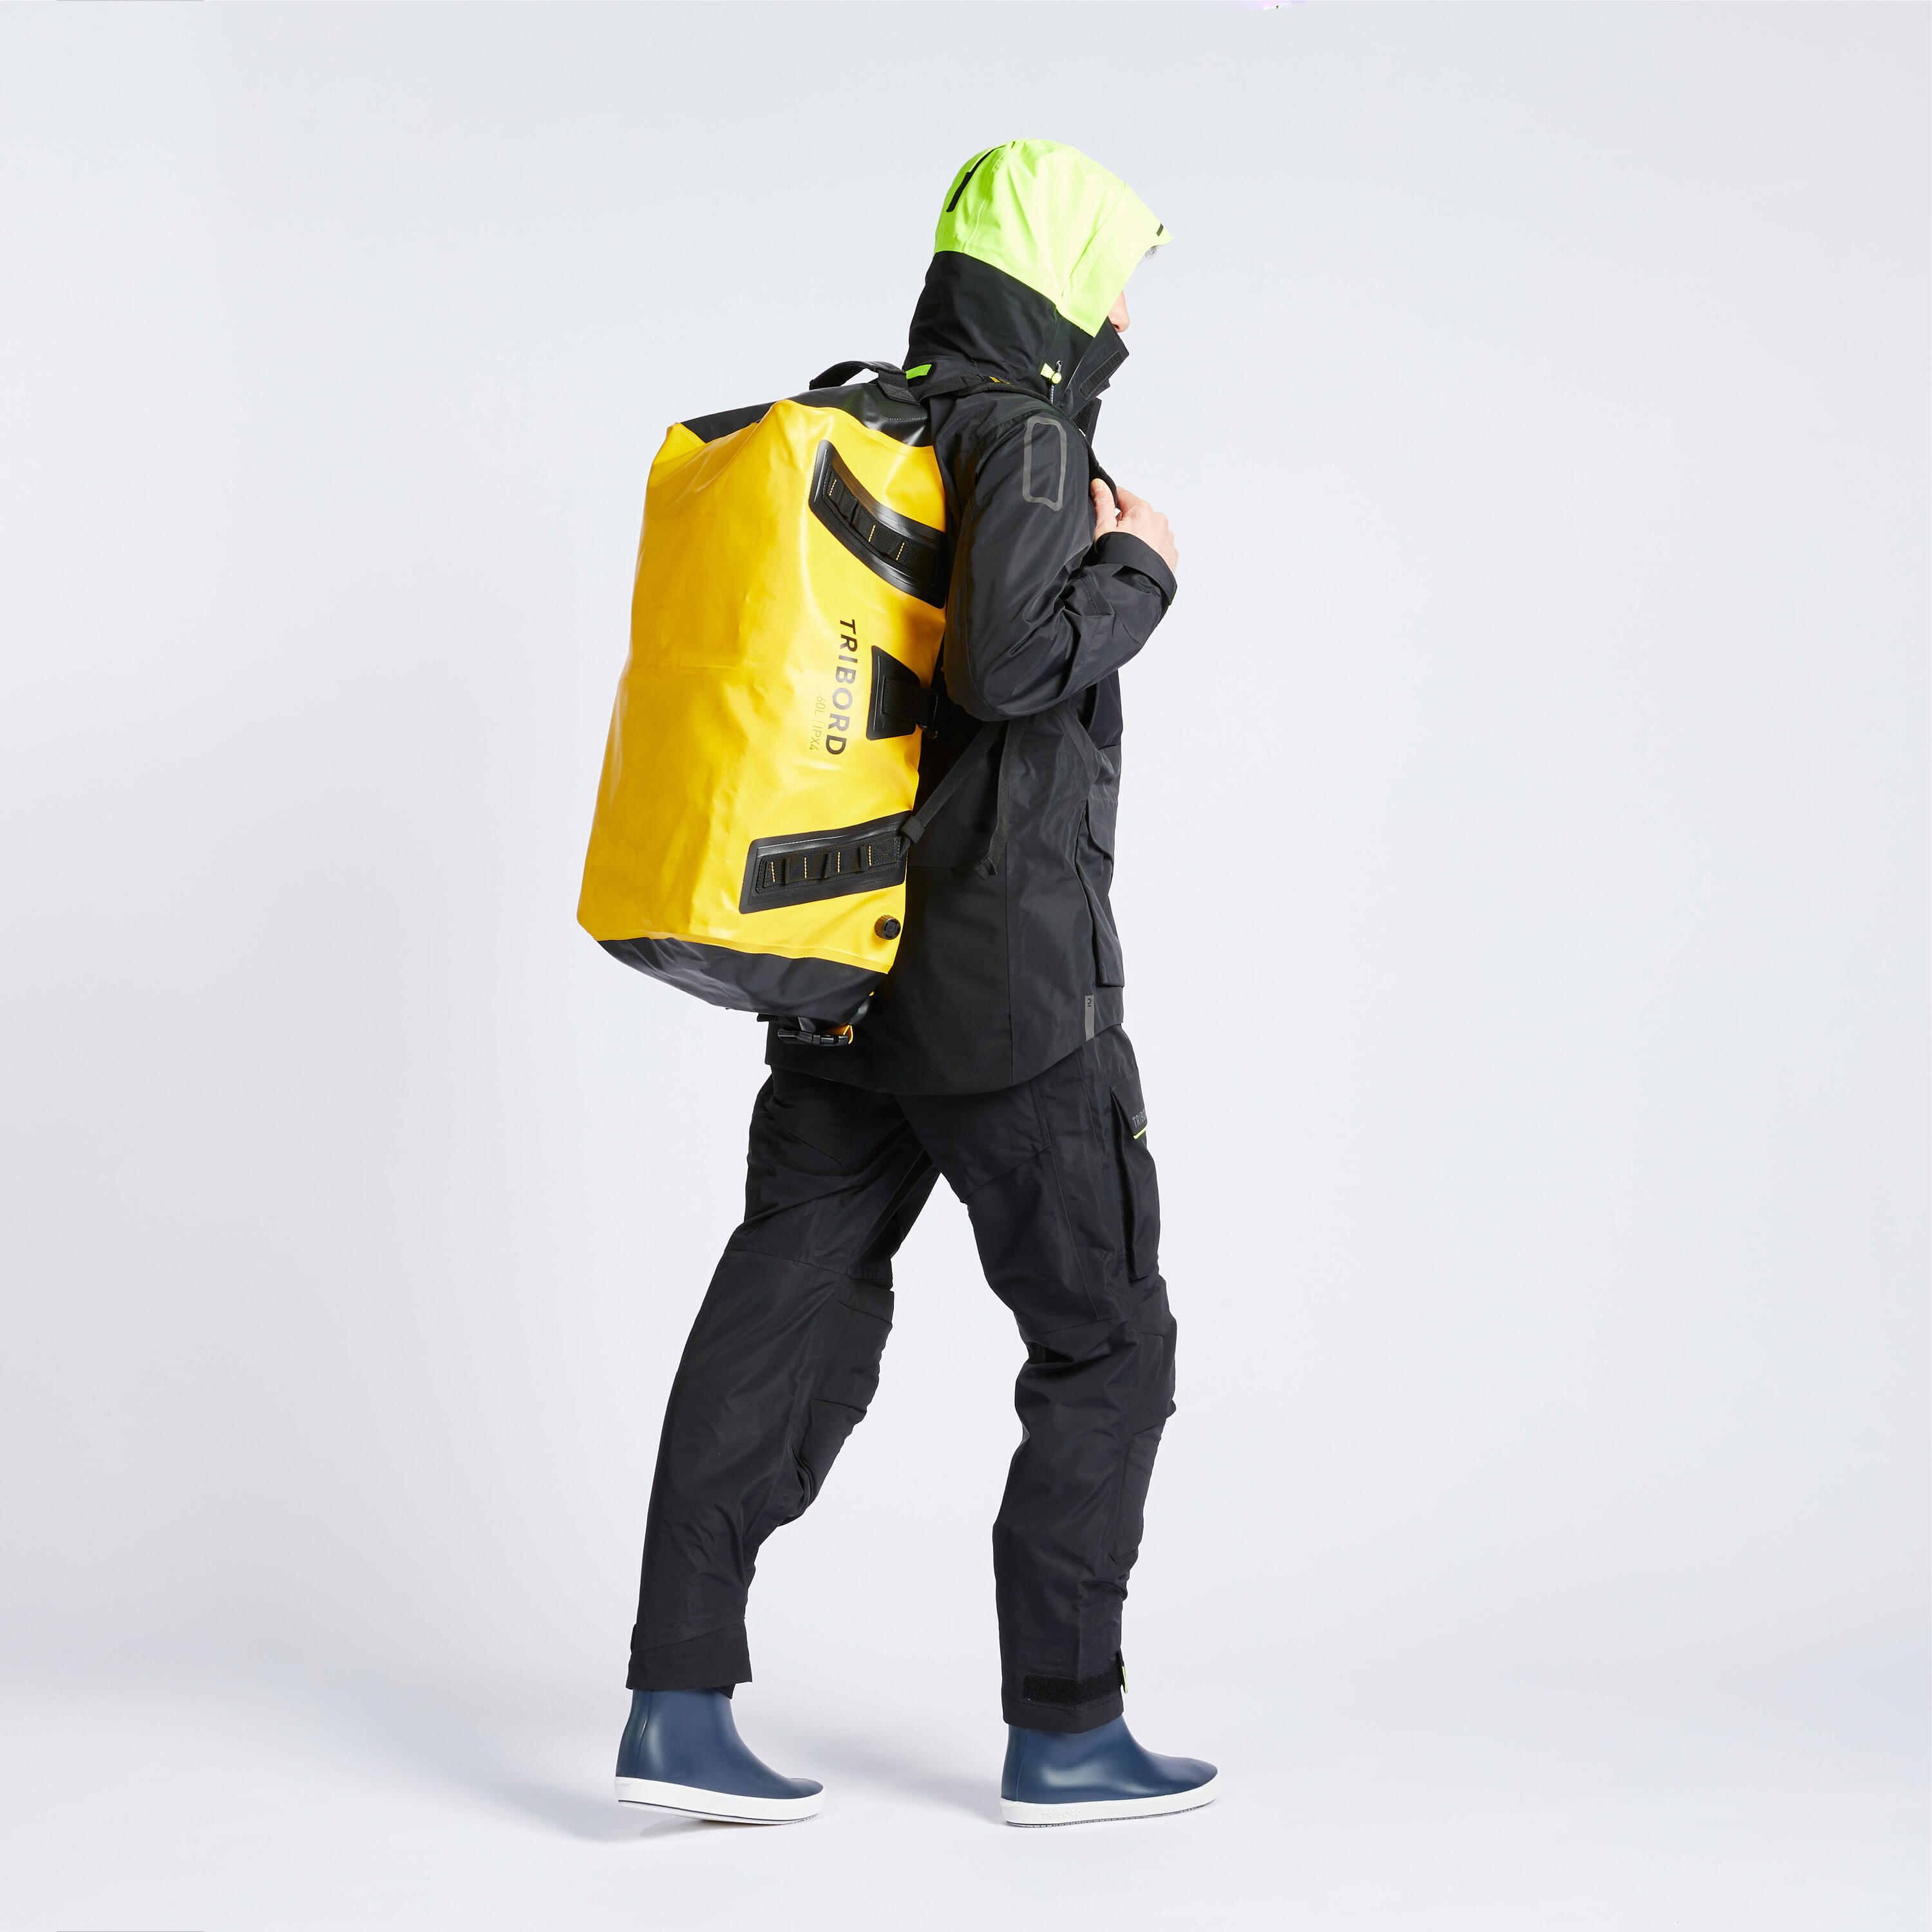 Waterproof duffle bag - travel bag 60 L yellow black 4/5